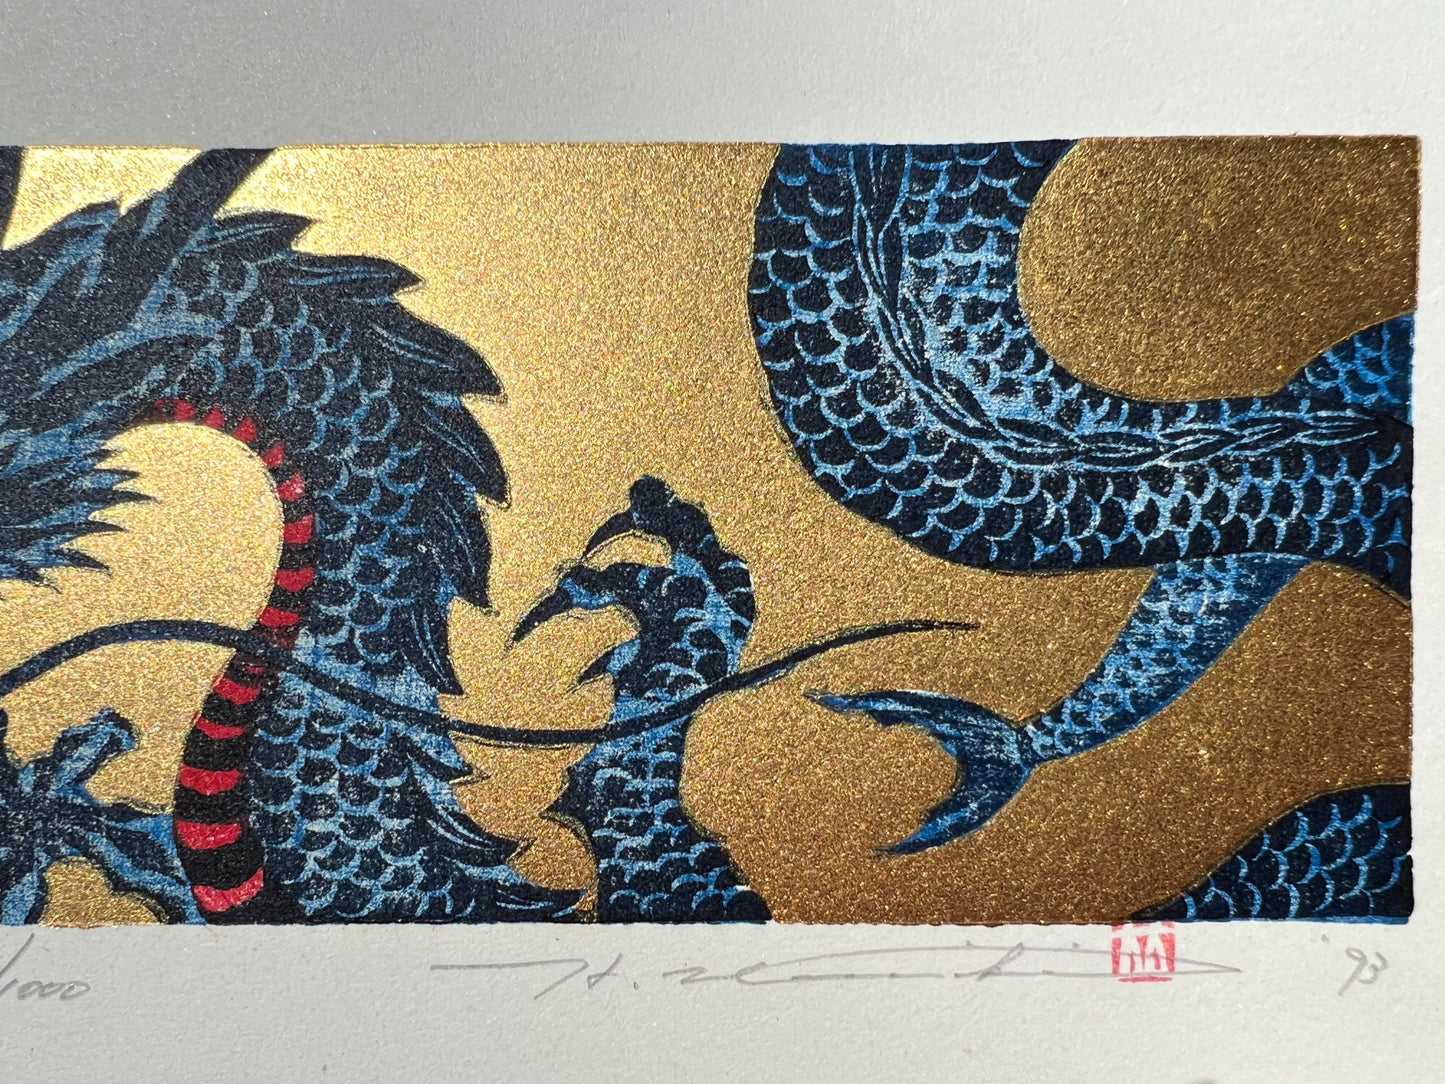 estampe japonaise dragon bleu sur fond or, gueule fermée, le corps et griffes, signature de l'artiste